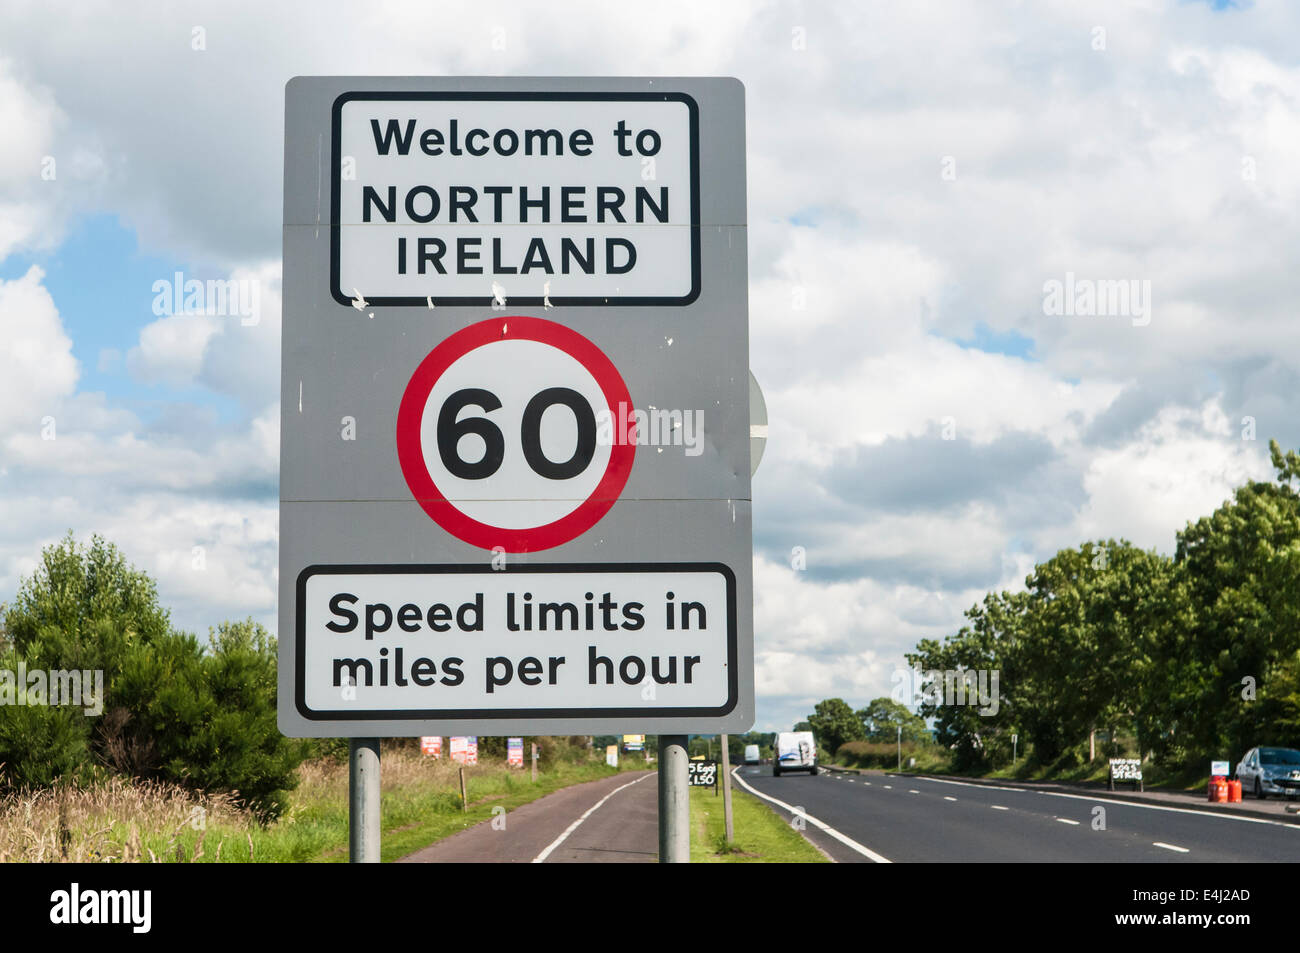 Panneau routier à la frontière de l'Irlande du Nord avec la République d'Irlande accueillir les gens à l'Irlande du Nord et un rappel que les limites de vitesse sont en km/h. Banque D'Images